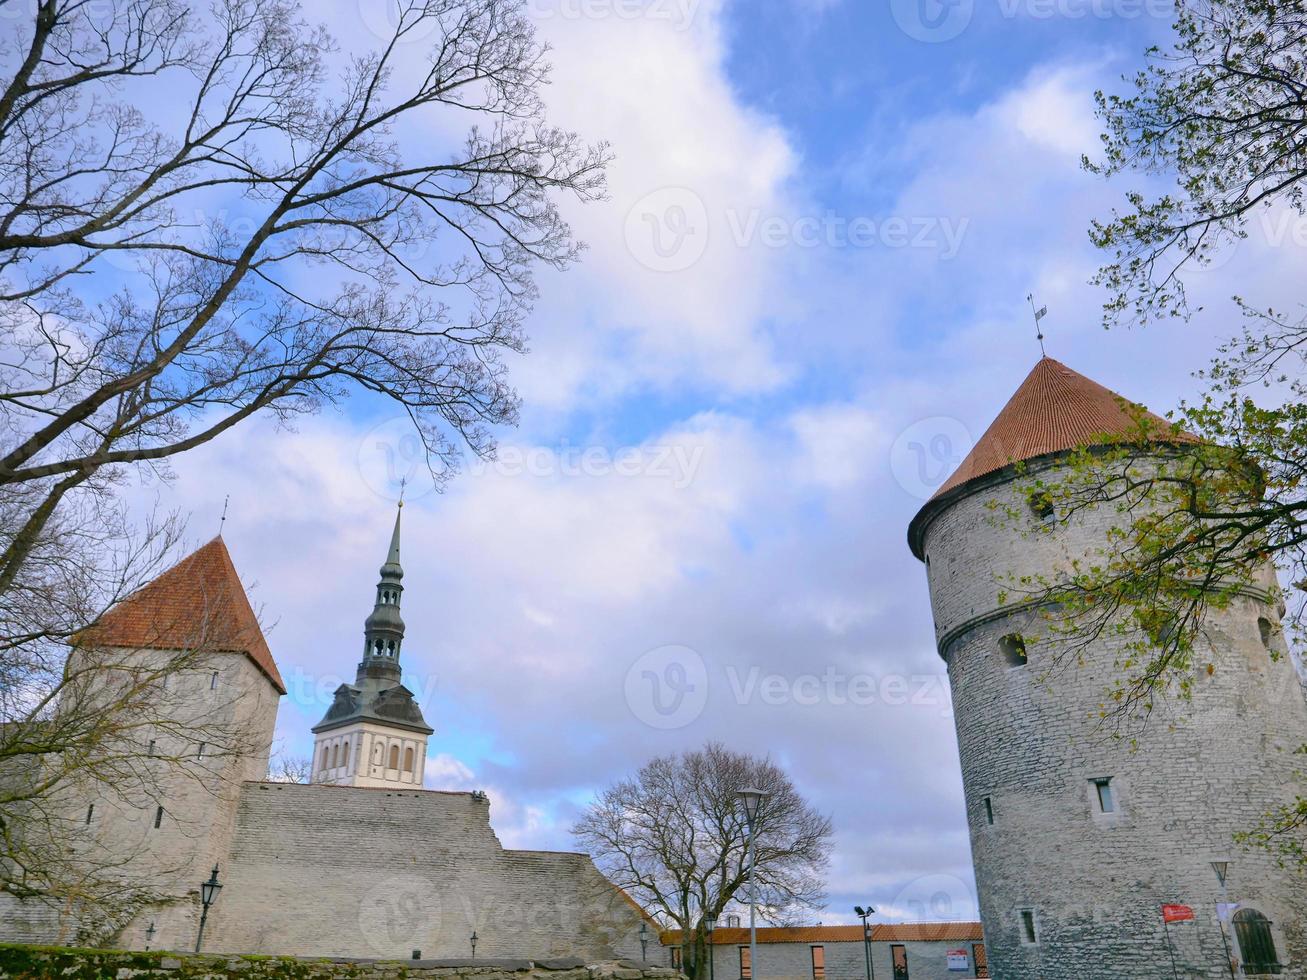 sechsstöckiger Artillerieturm in Tallinn, Estland foto